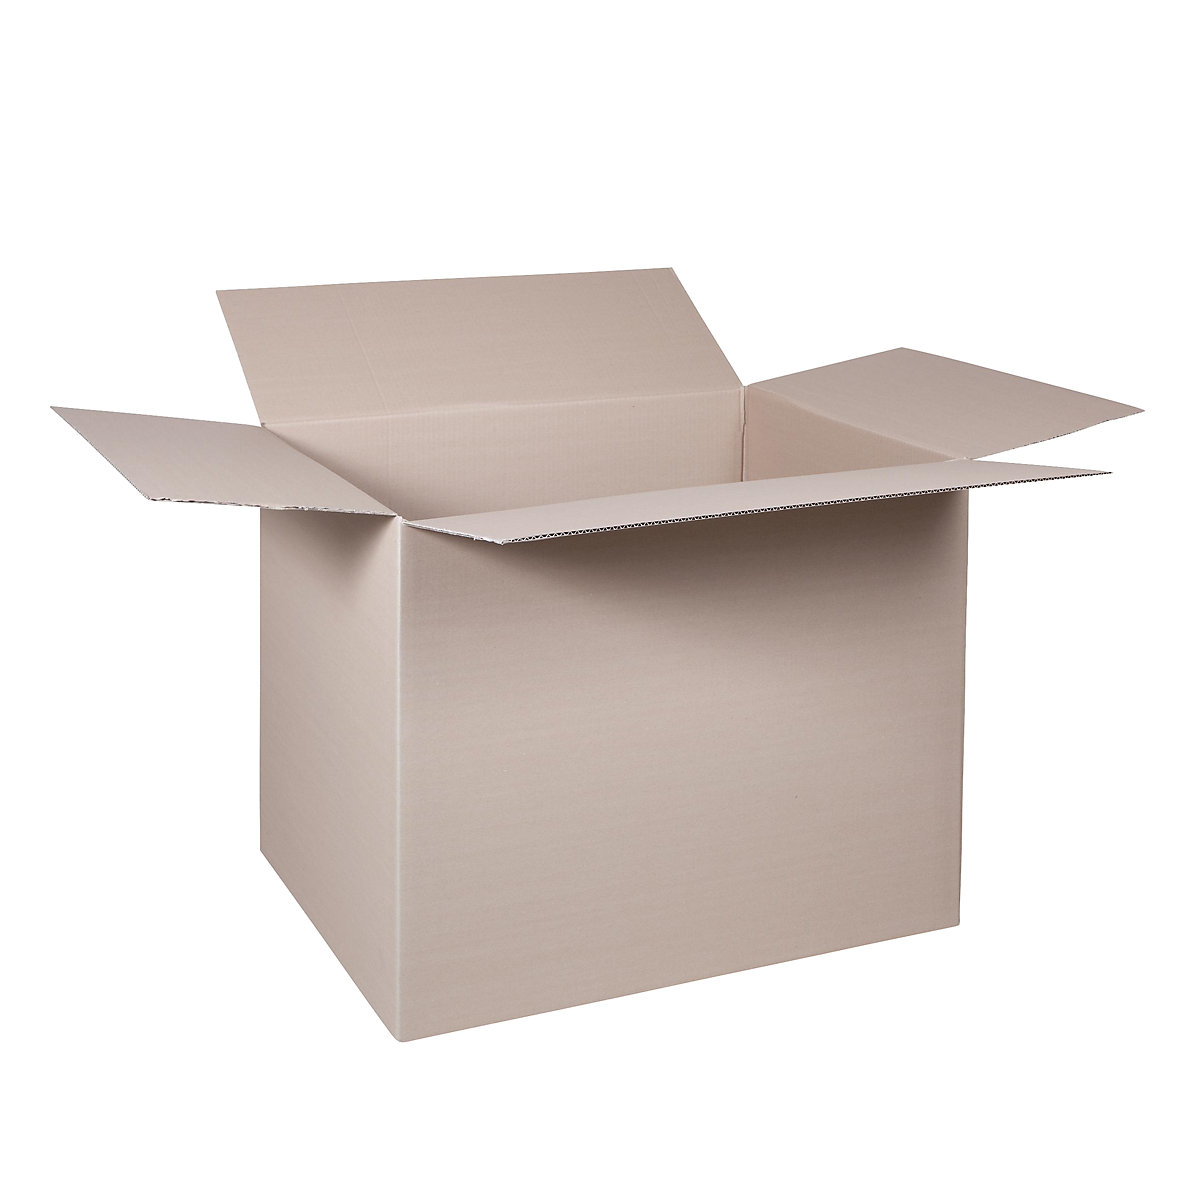 Sklopiva kartonska kutija, FEFCO 0201, od 1-valnog kartona, unutarnje dimenzije 600 x 400 x 400 mm, pak. 100 kom.-8